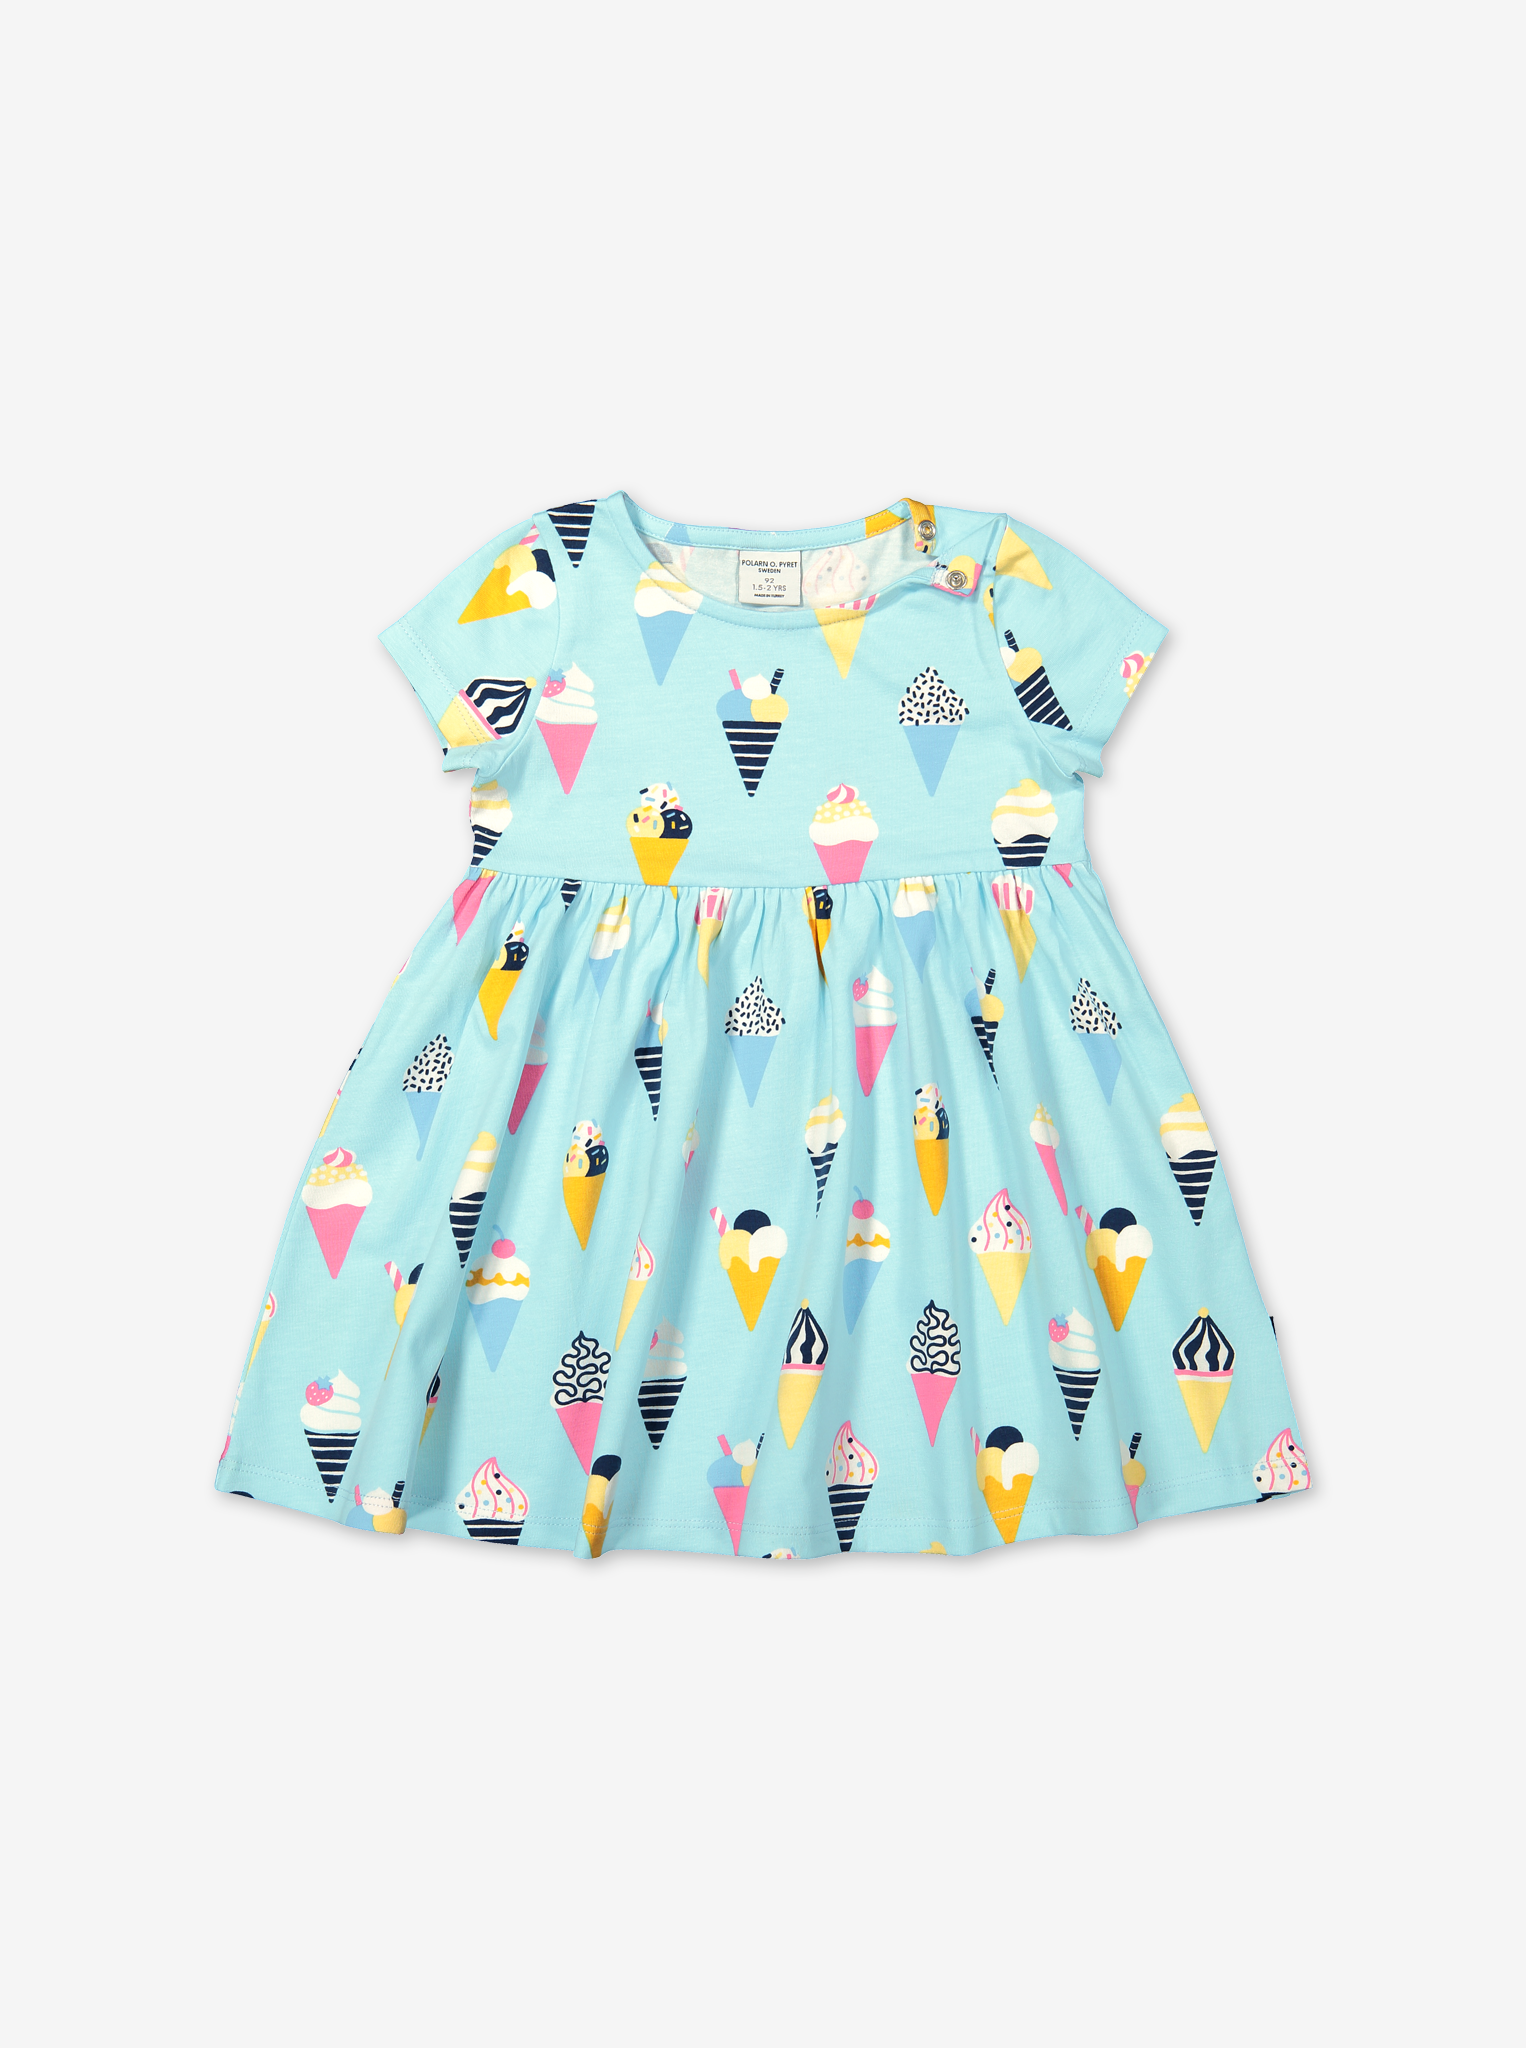 Twirl Ice Cream Dress-Girl-1-8y-Turquoise